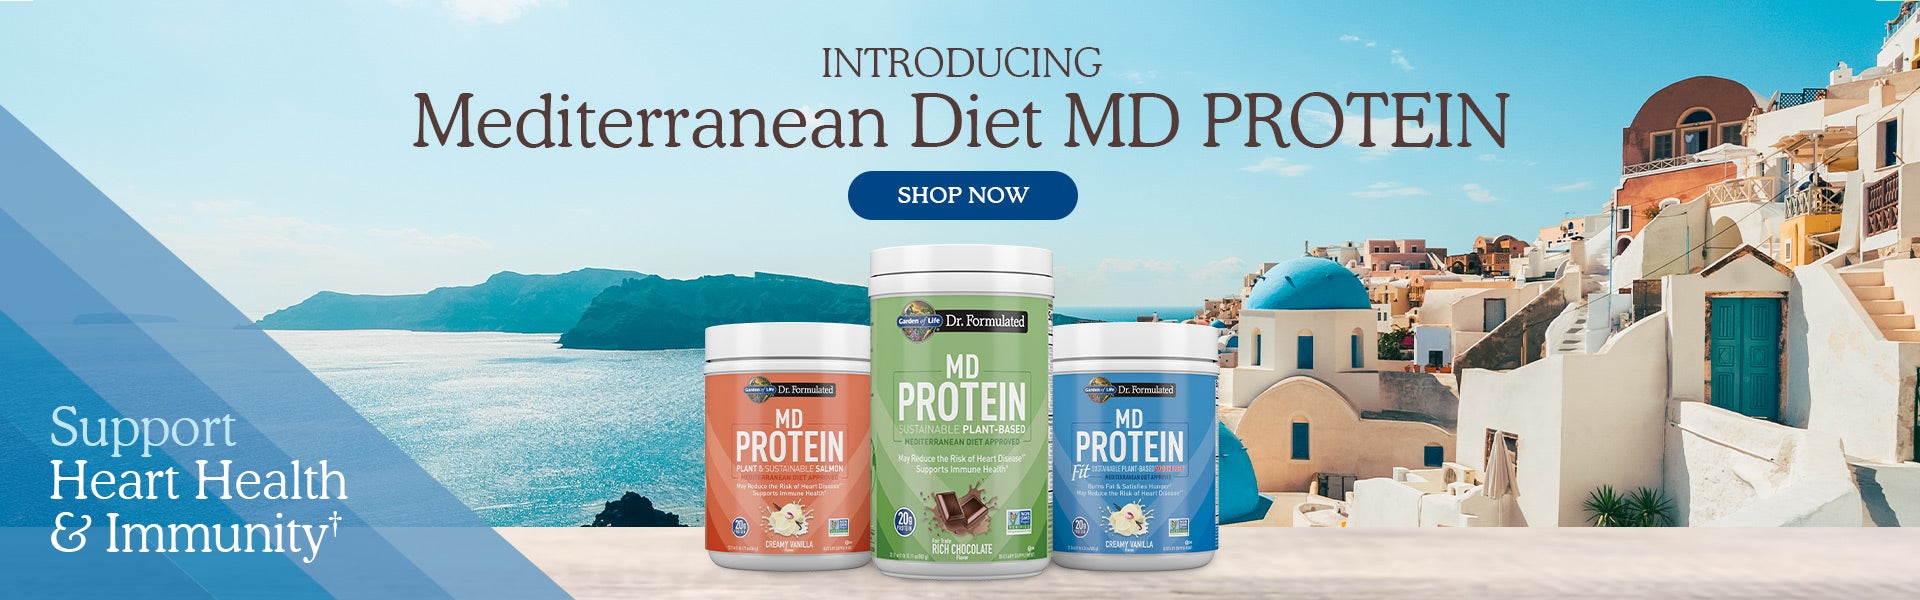 Introducing Mediterranean Diet MD PROTEIN